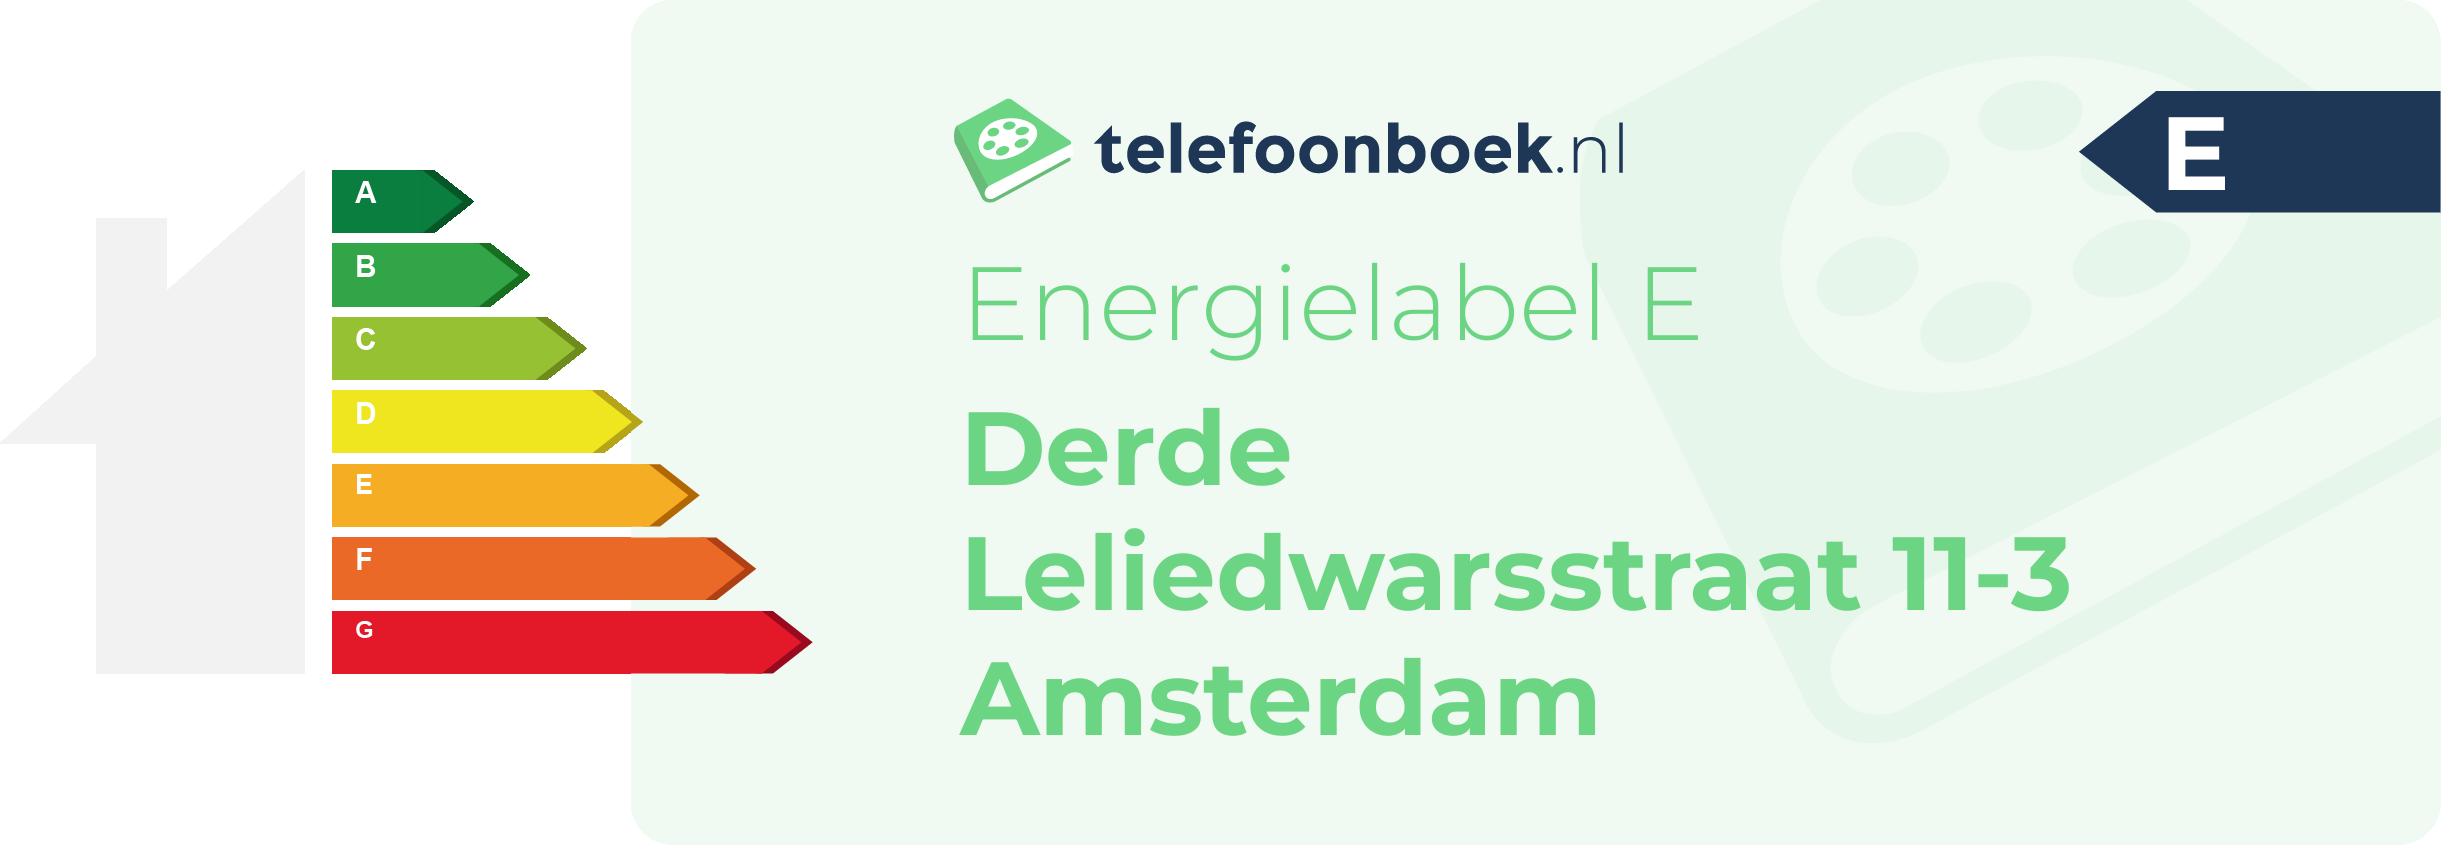 Energielabel Derde Leliedwarsstraat 11-3 Amsterdam